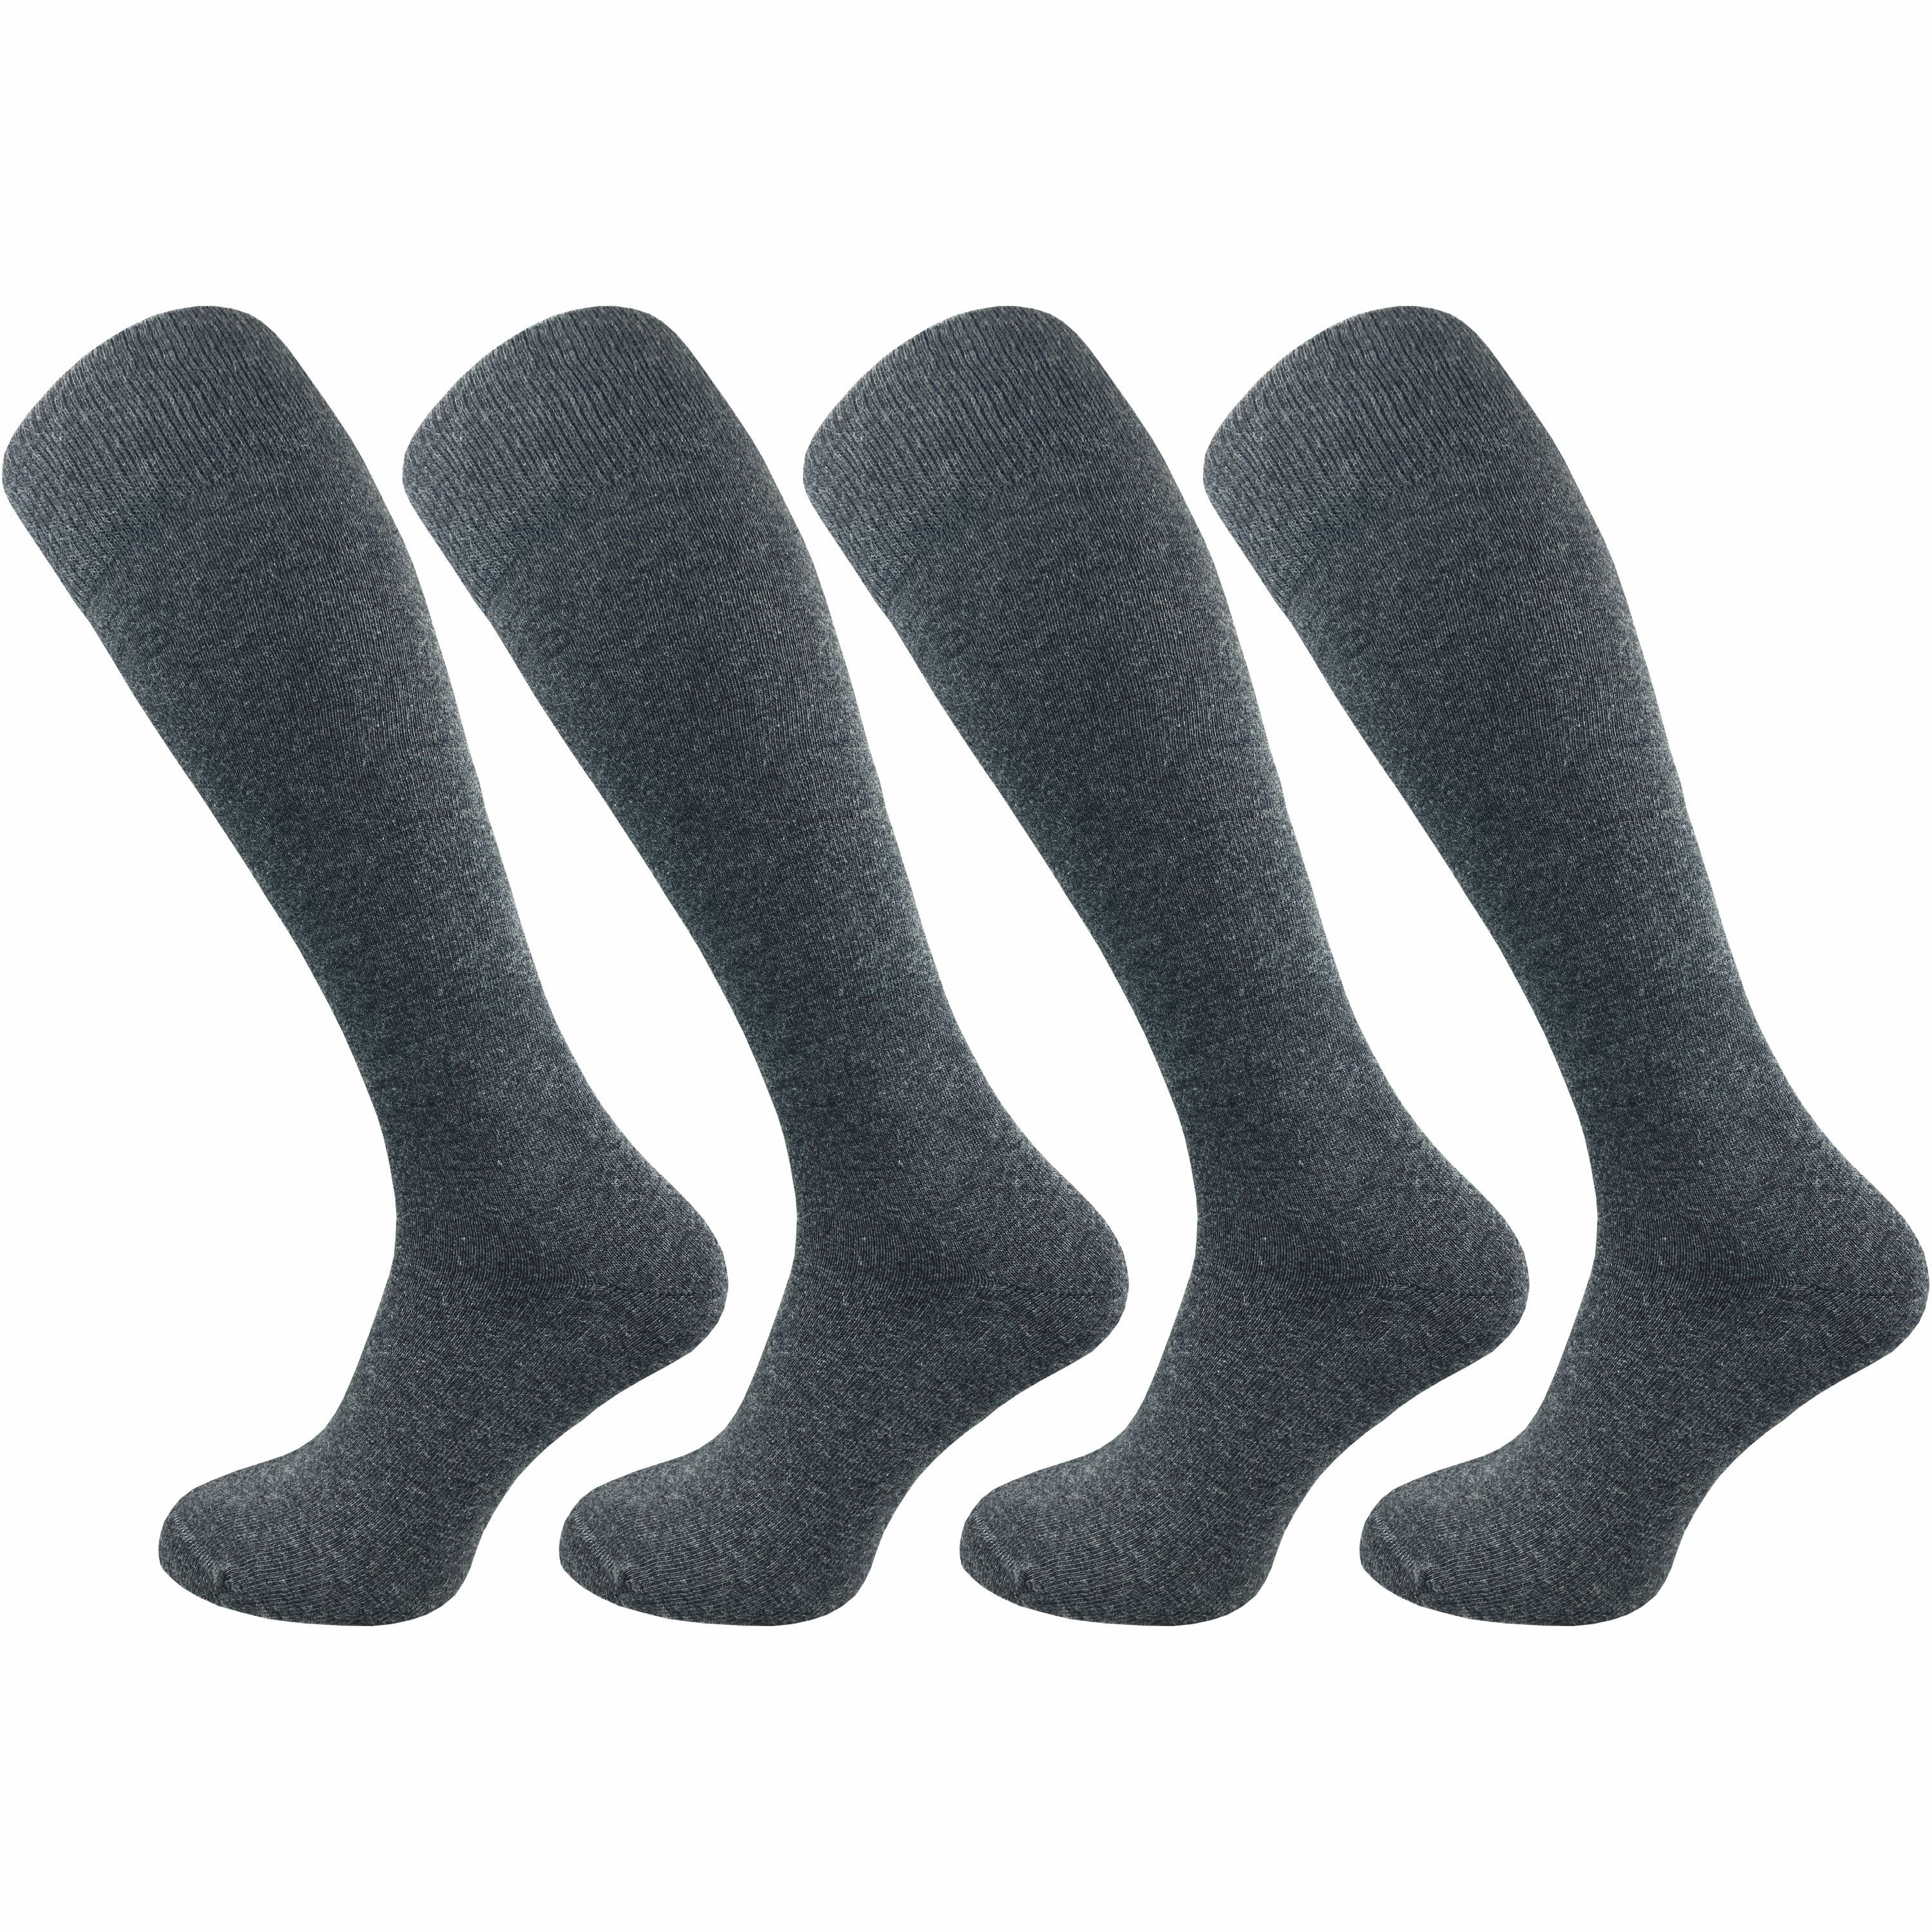 Lange aus Socken ohne - nicht mit speziellem (4 Paar) der weich Naht & Kniestrümpfe Herren Baumwolle grau GAWILO einschneidet drückende für Komfortbund, extra